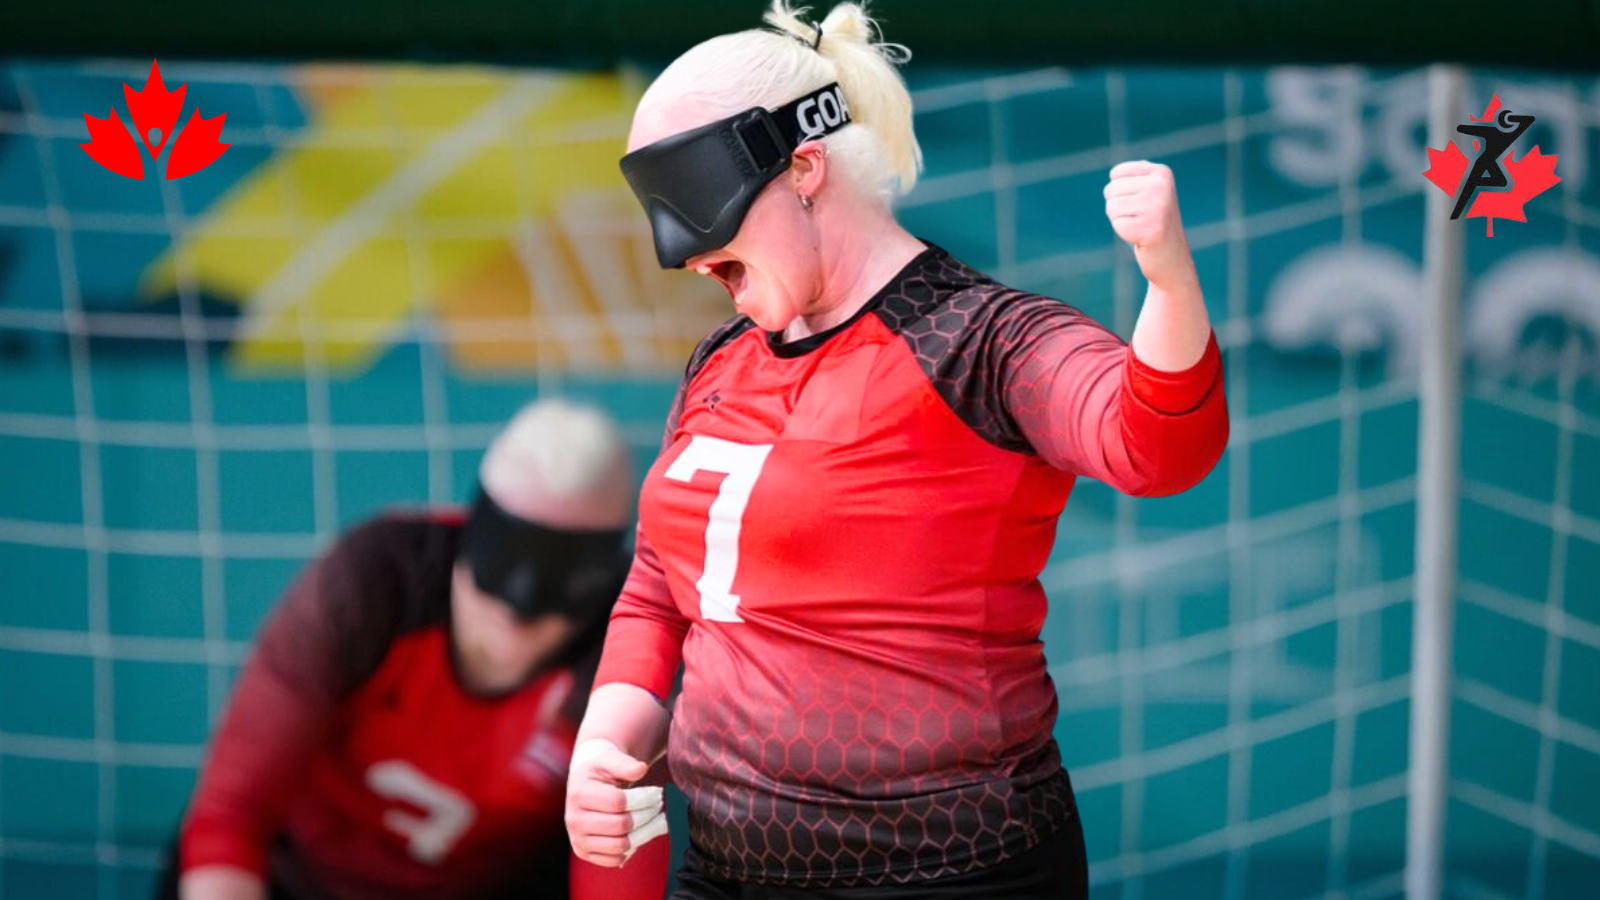 Pleins feux sur une représentante des athlètes : Amy Burk – Goalball